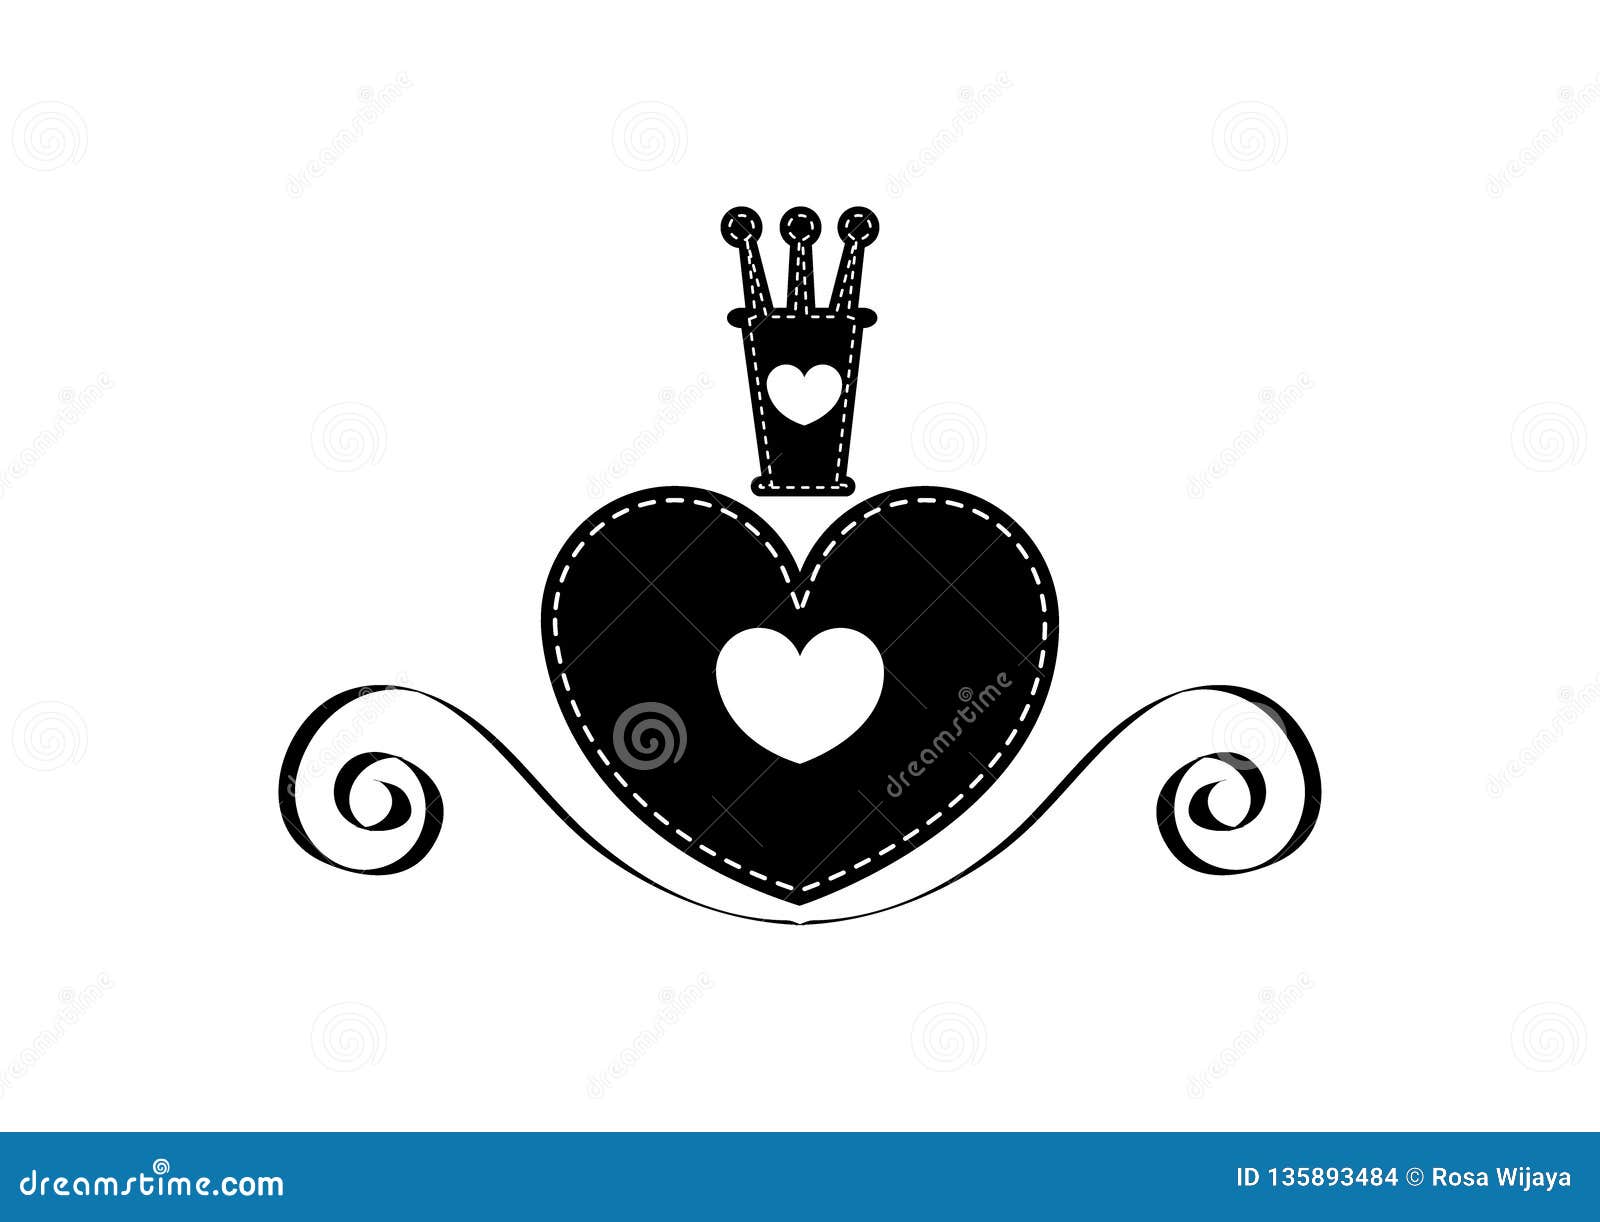 Black heart queen